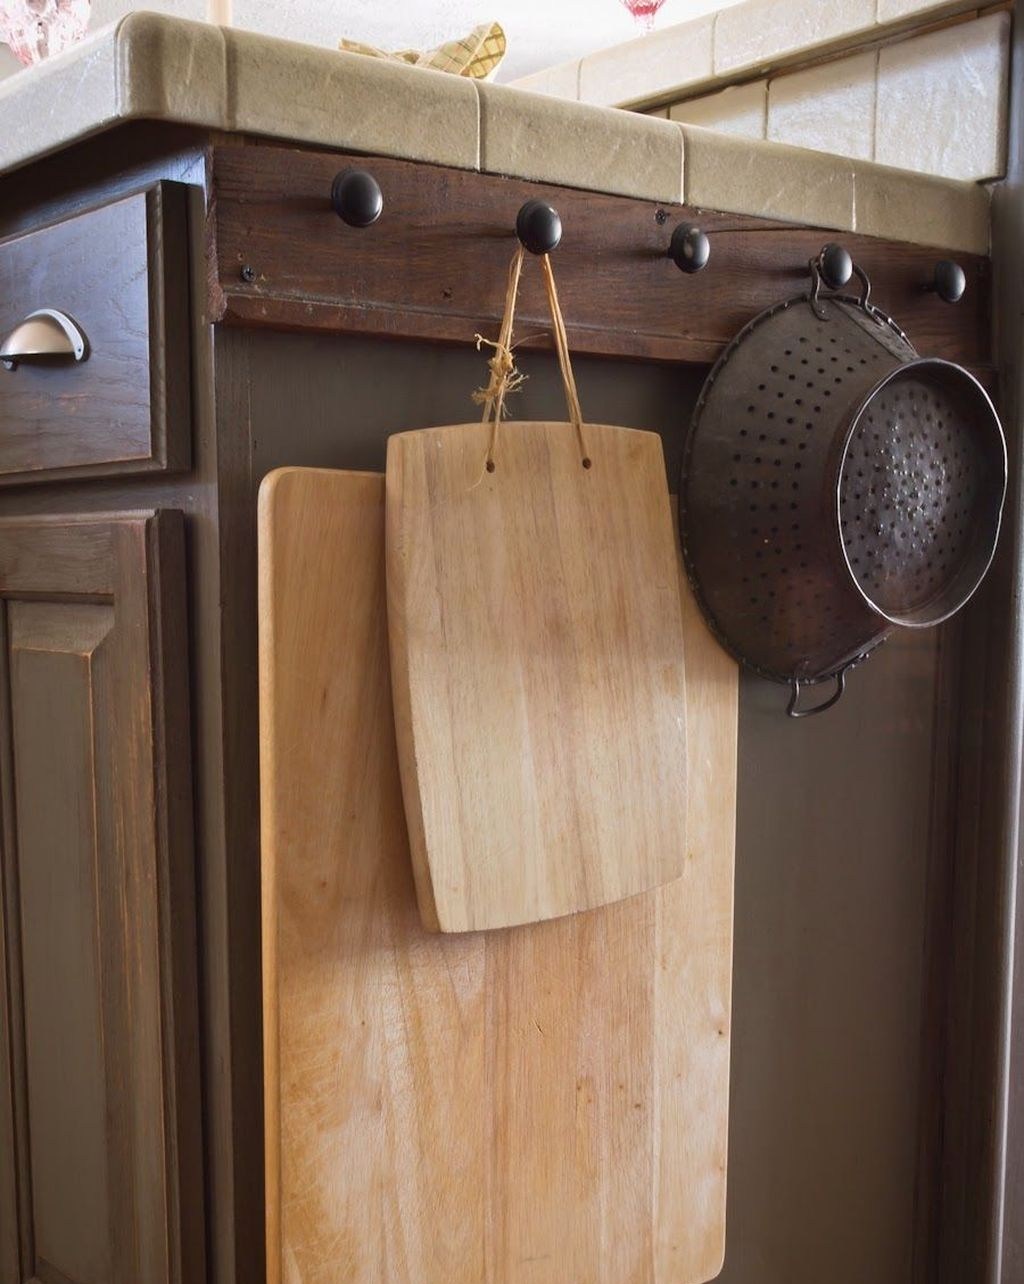 Tận dụng mặt bên của tủ dưới để lắp đặt những chiếc núm gỗ chắc chắn để treo vật nặng.